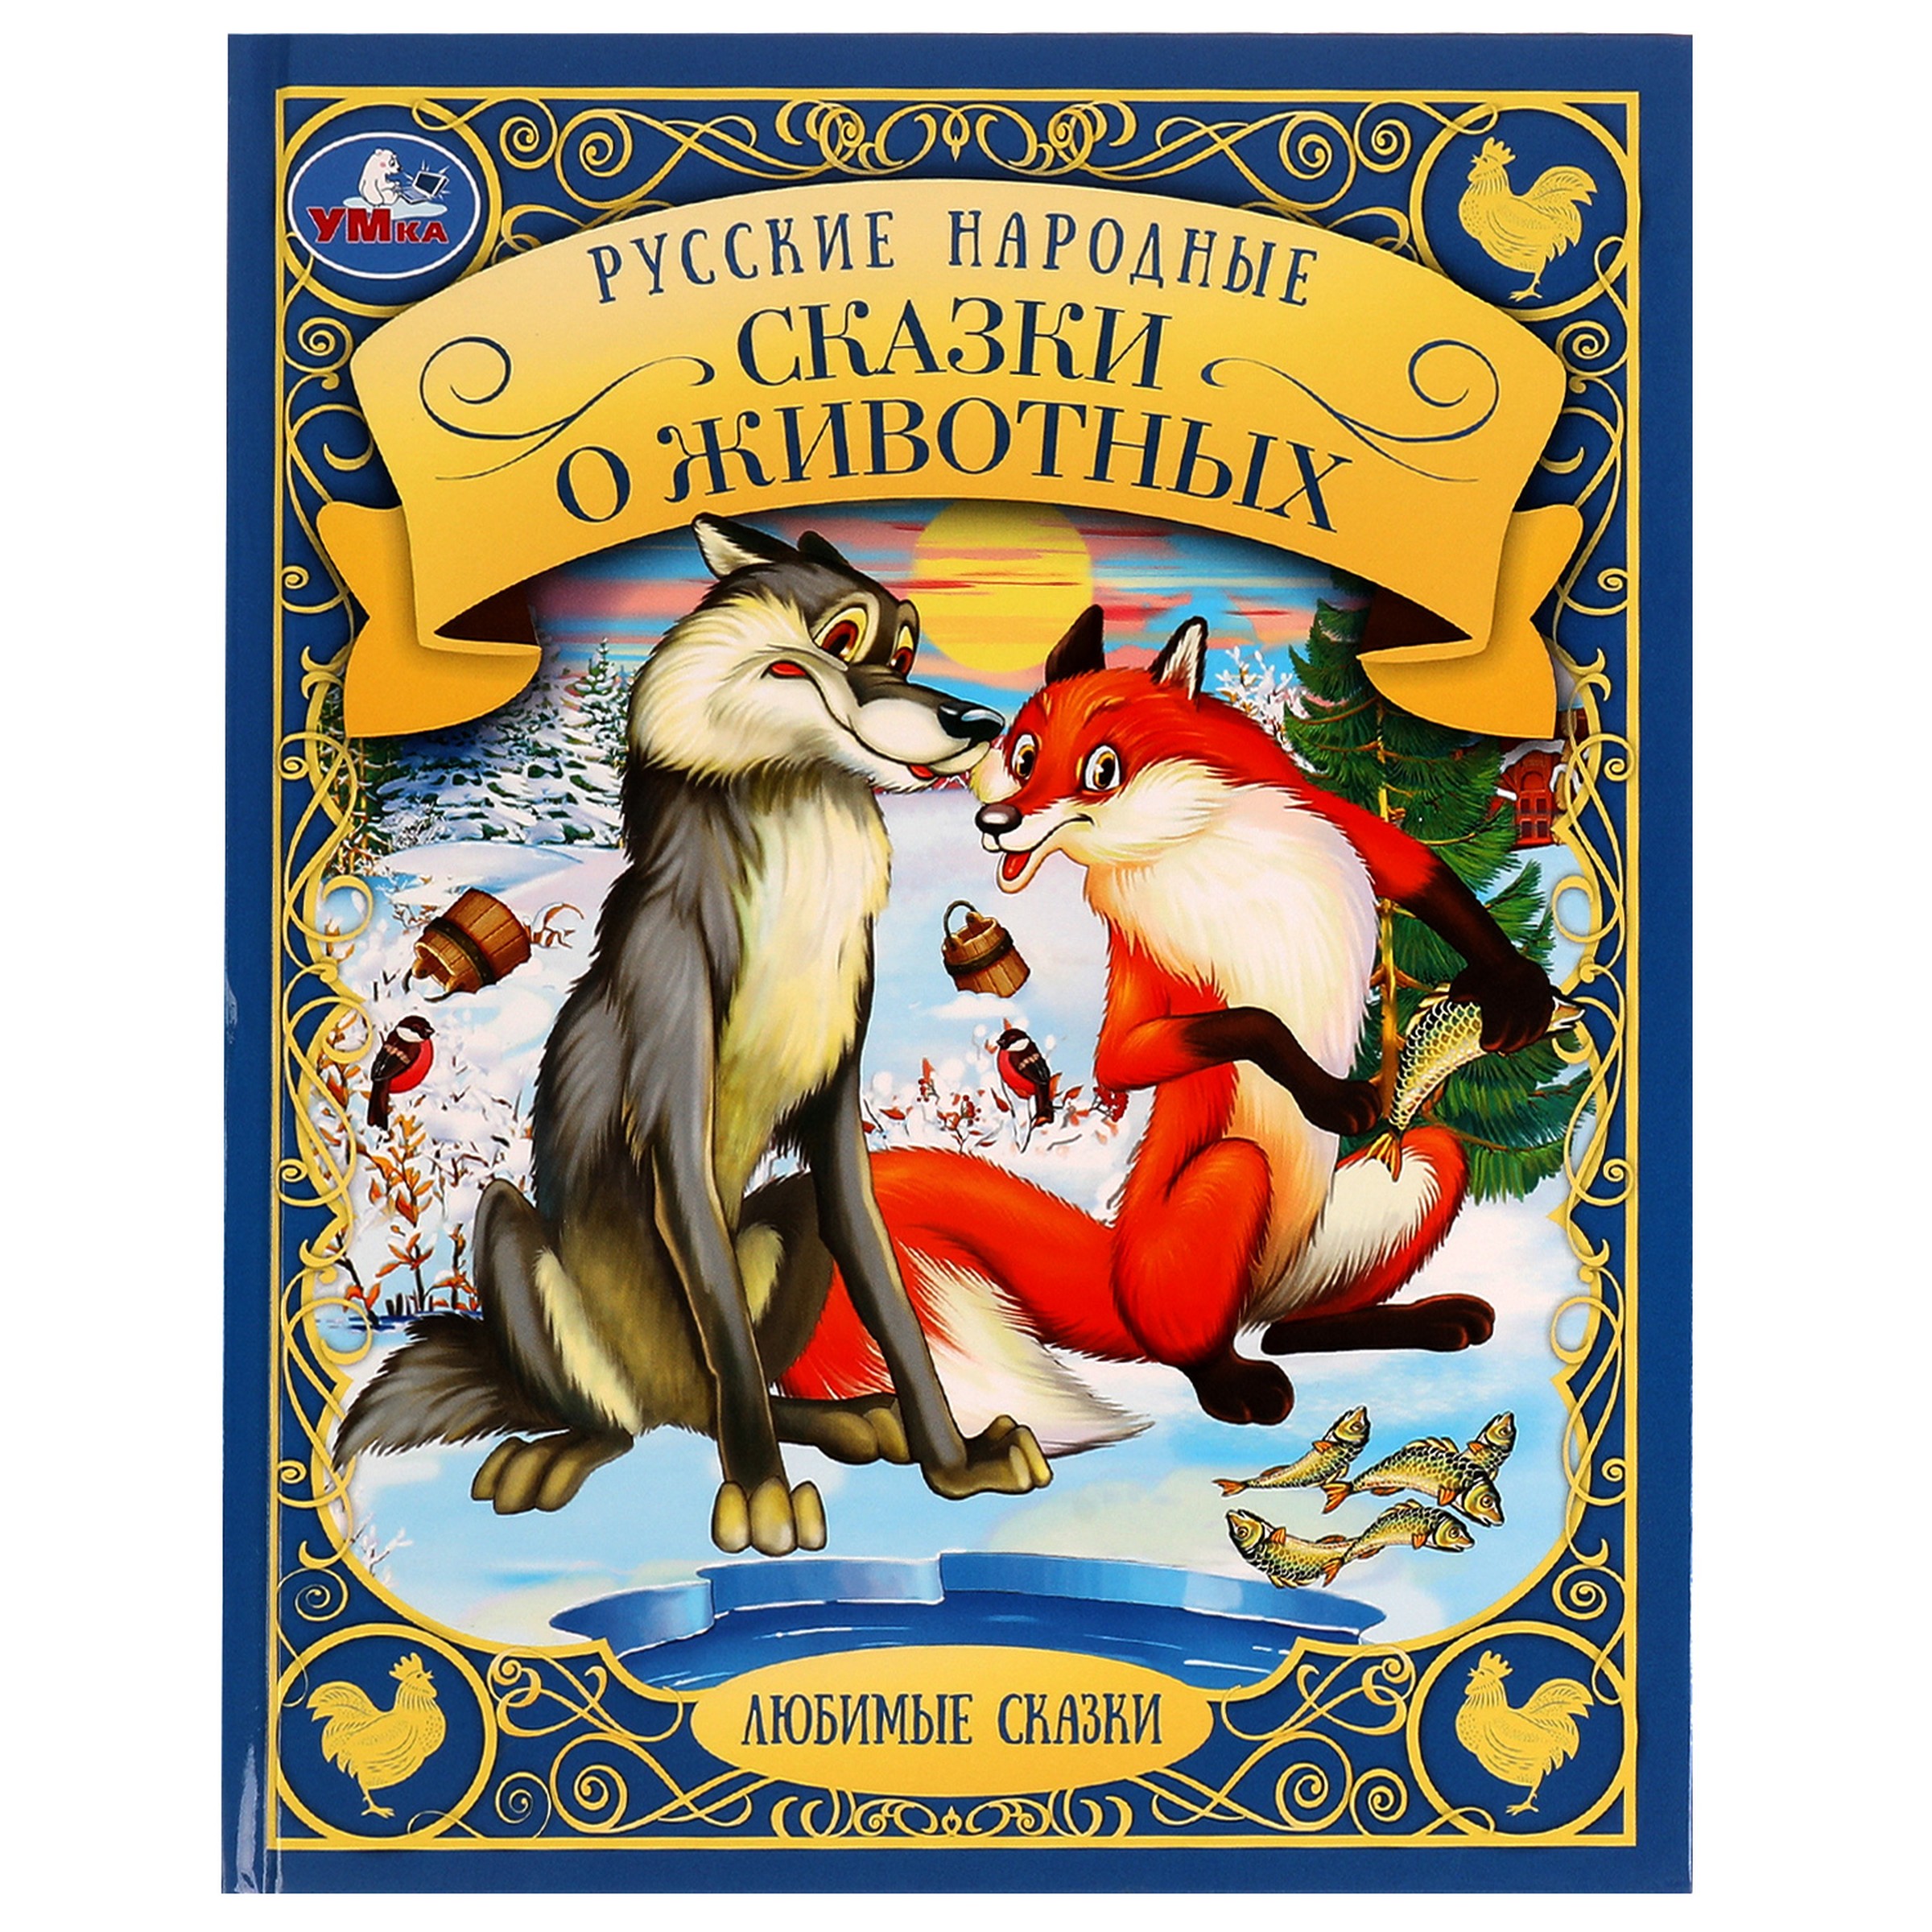 Любимые сказки. Русские народные сказки о животных лиса и заяц машины сказки книжка мозаика